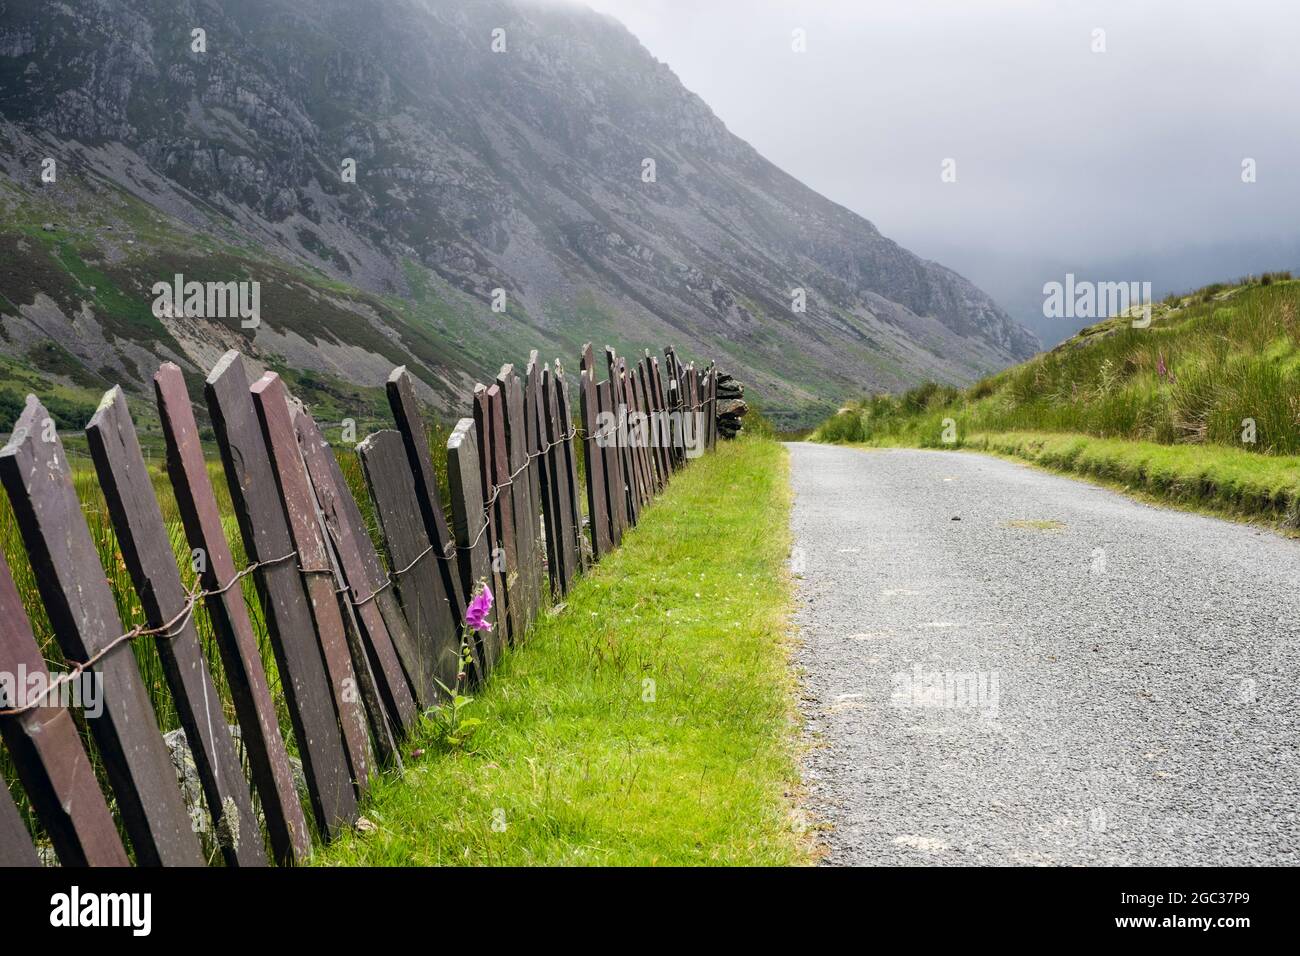 Lon Las Ogwen parcours cyclable le long d'une ruelle de campagne avec clôture en ardoise traditionnelle dans la vallée de Nant Ffranson à Snowdonia. Bethesda Gwynedd Nord du pays de Galles Royaume-Uni Banque D'Images